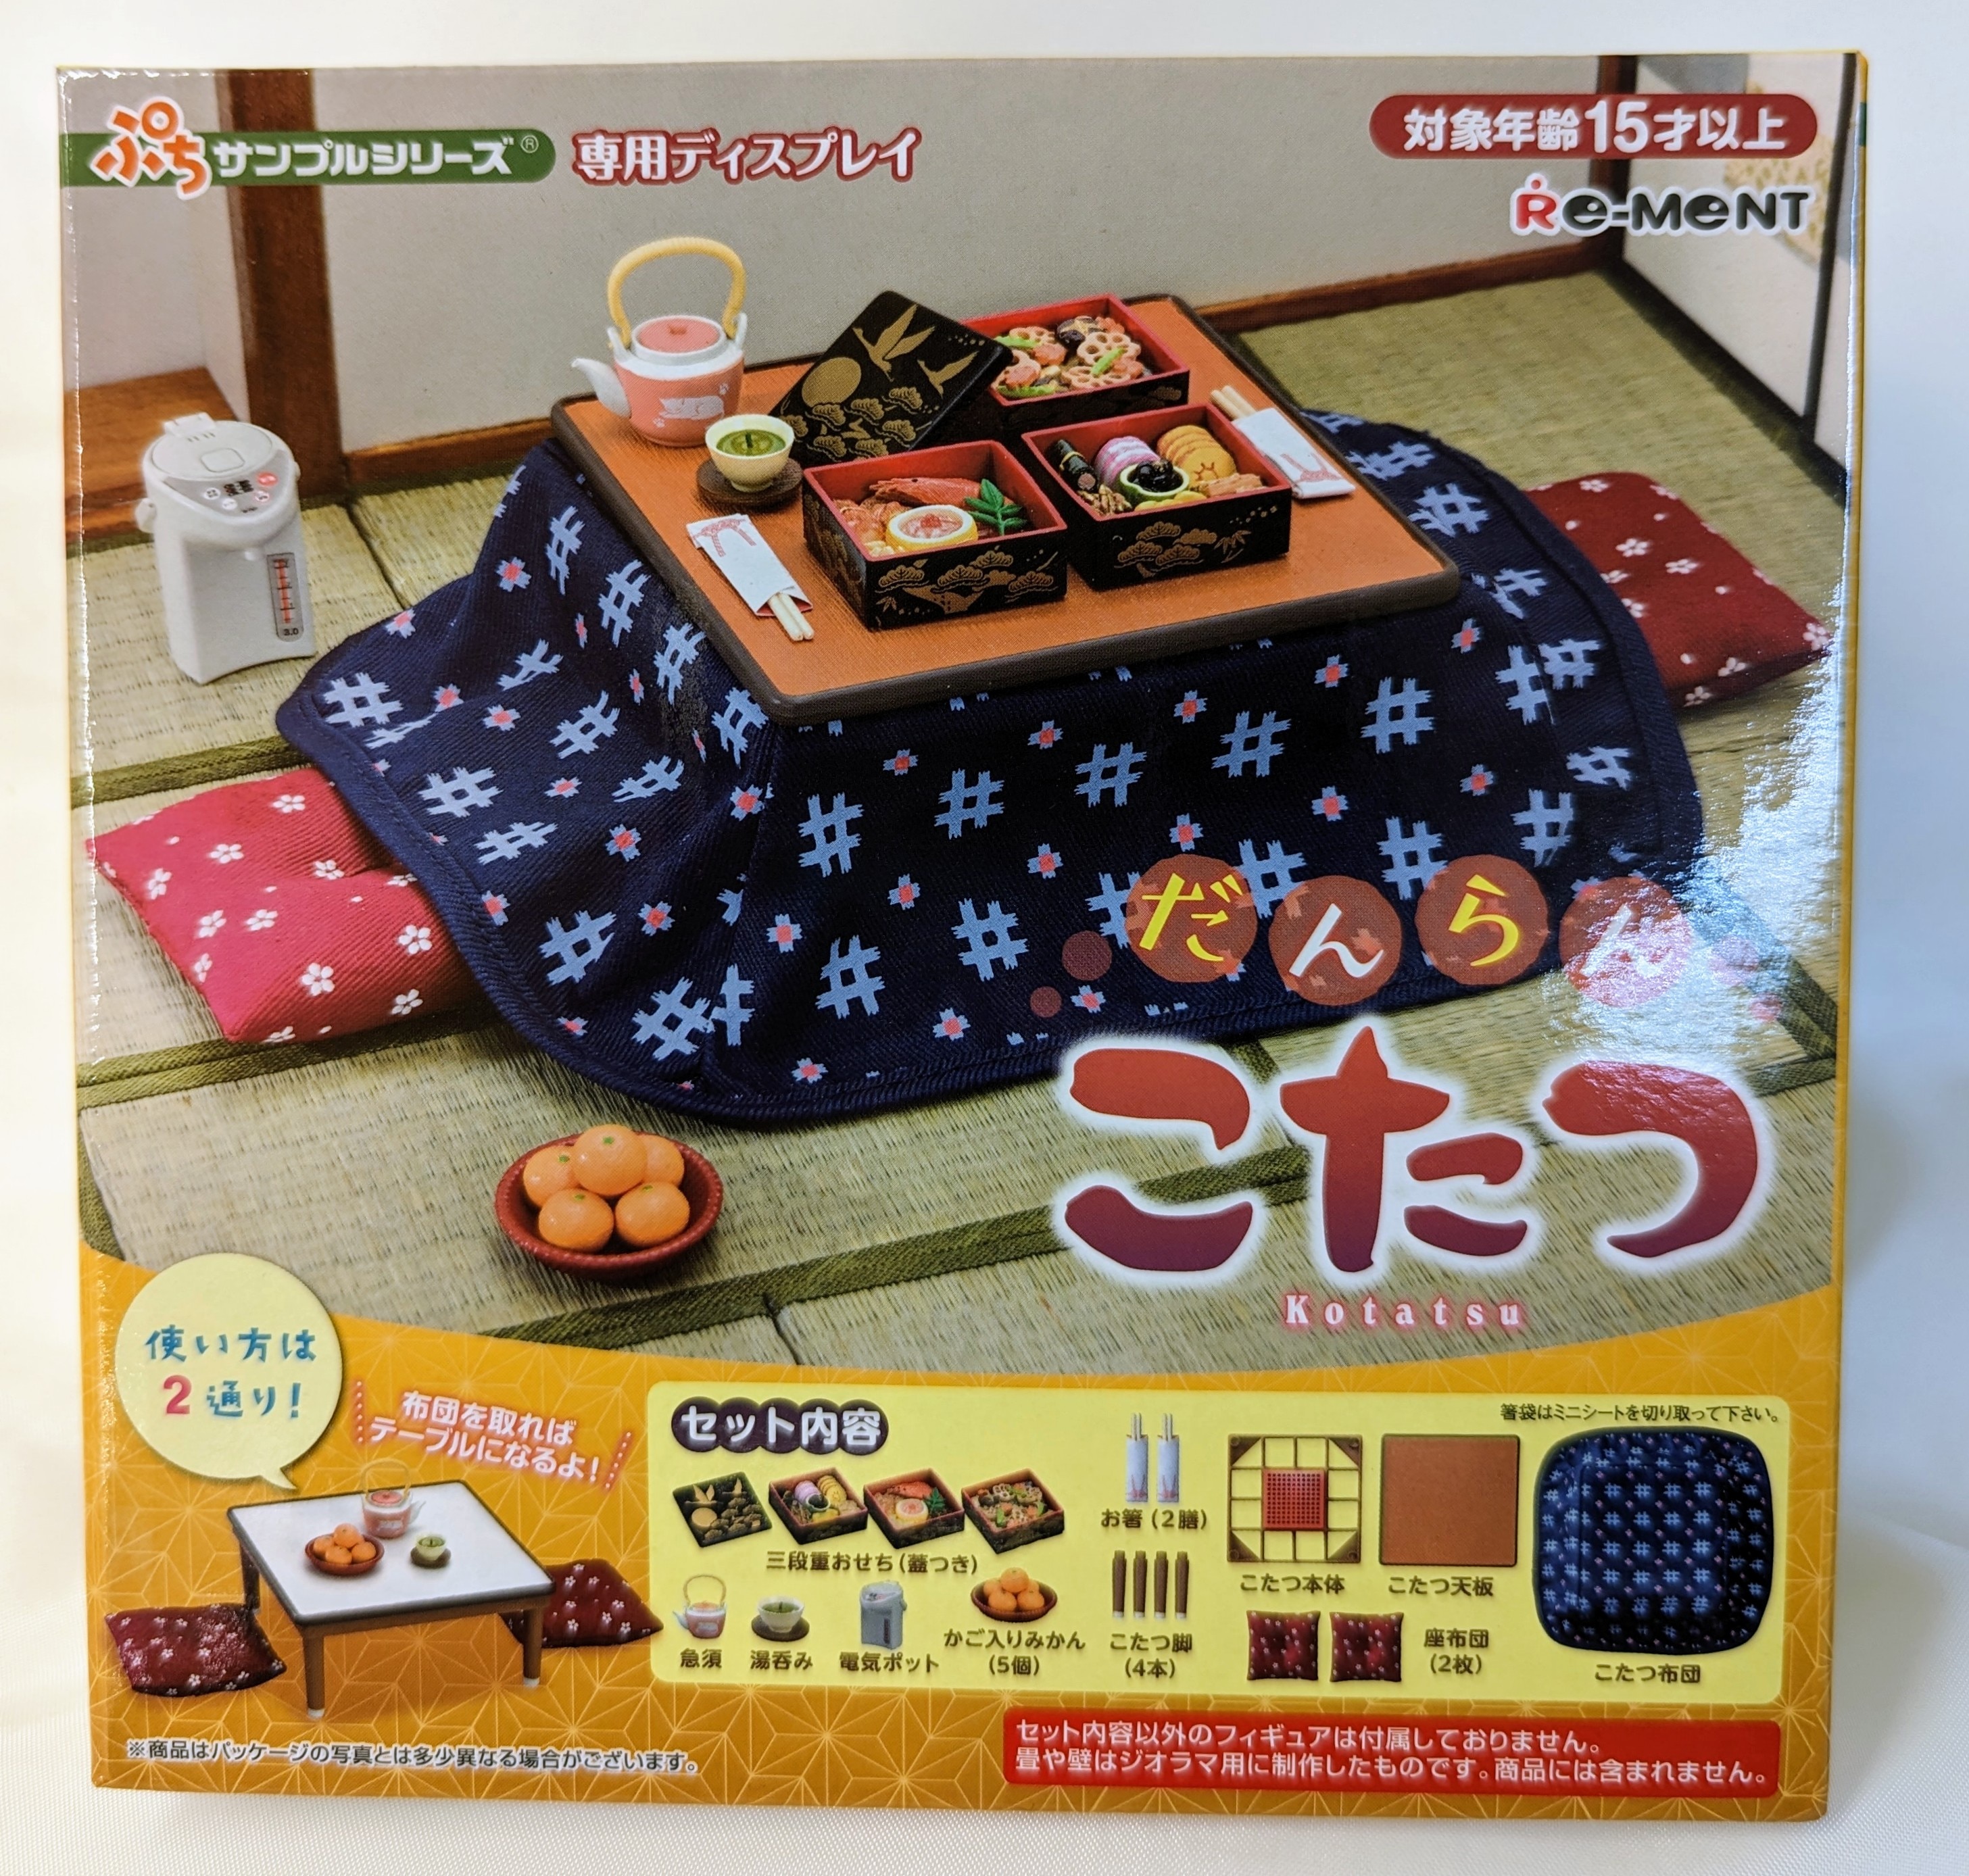 Petite Sample: Danran Kotatsu